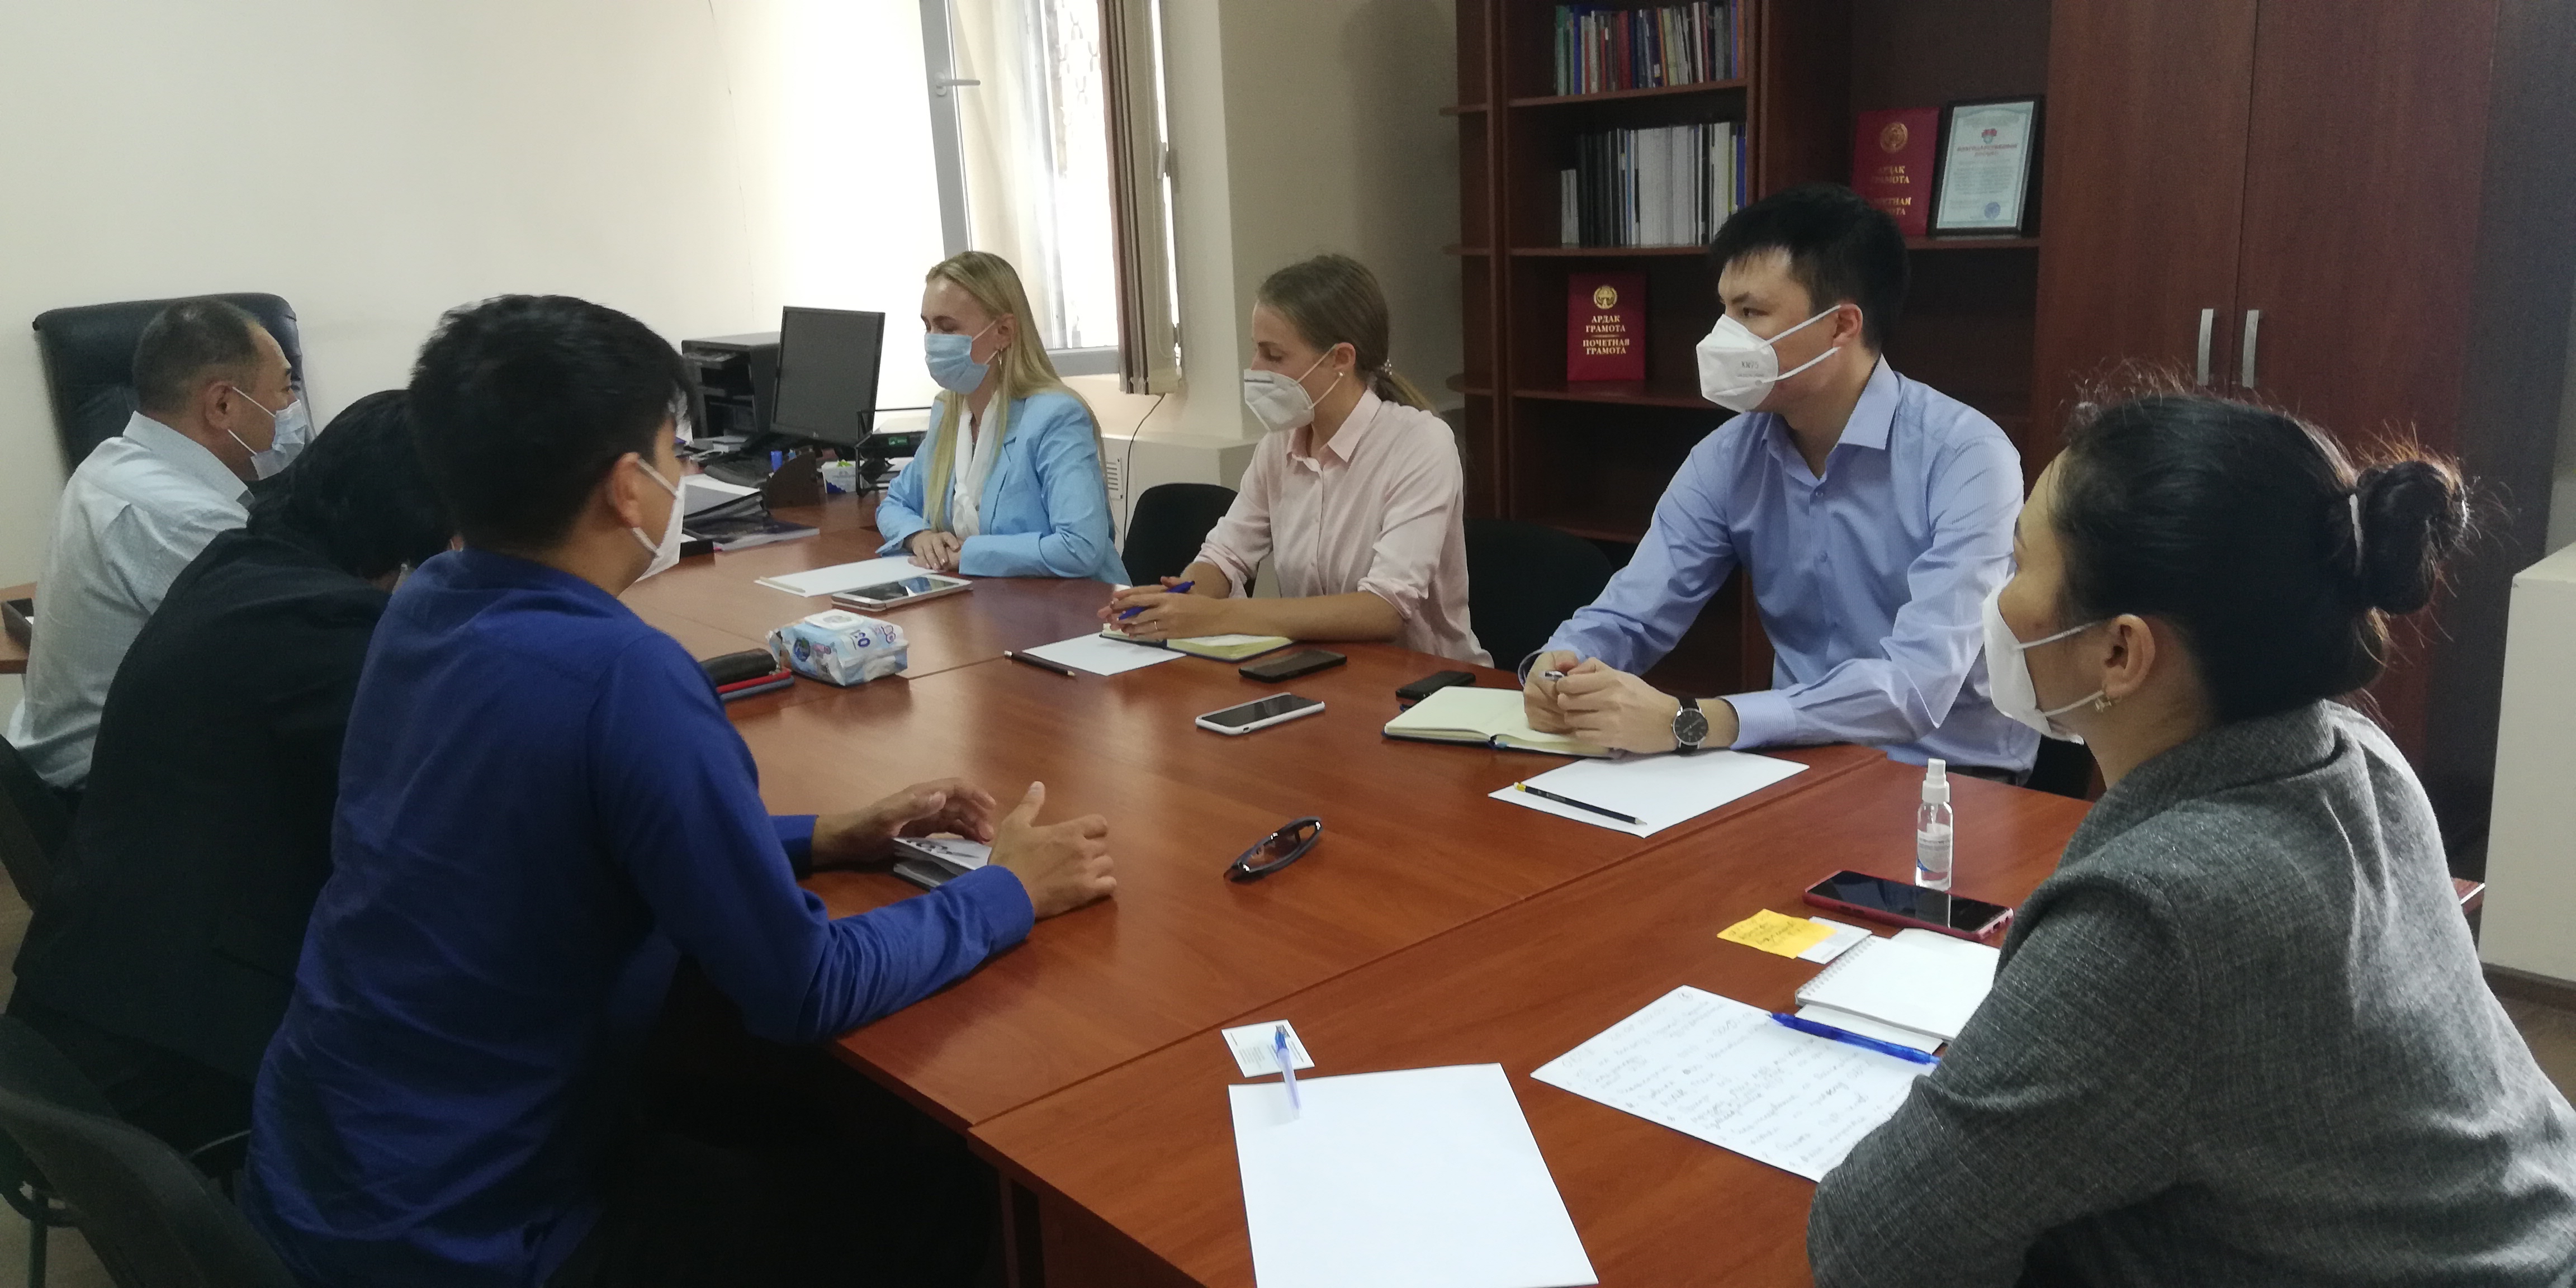 Состоялась встреча руководителей Национального центра с представителями Программного офиса ОБСЕ в Бишкеке.